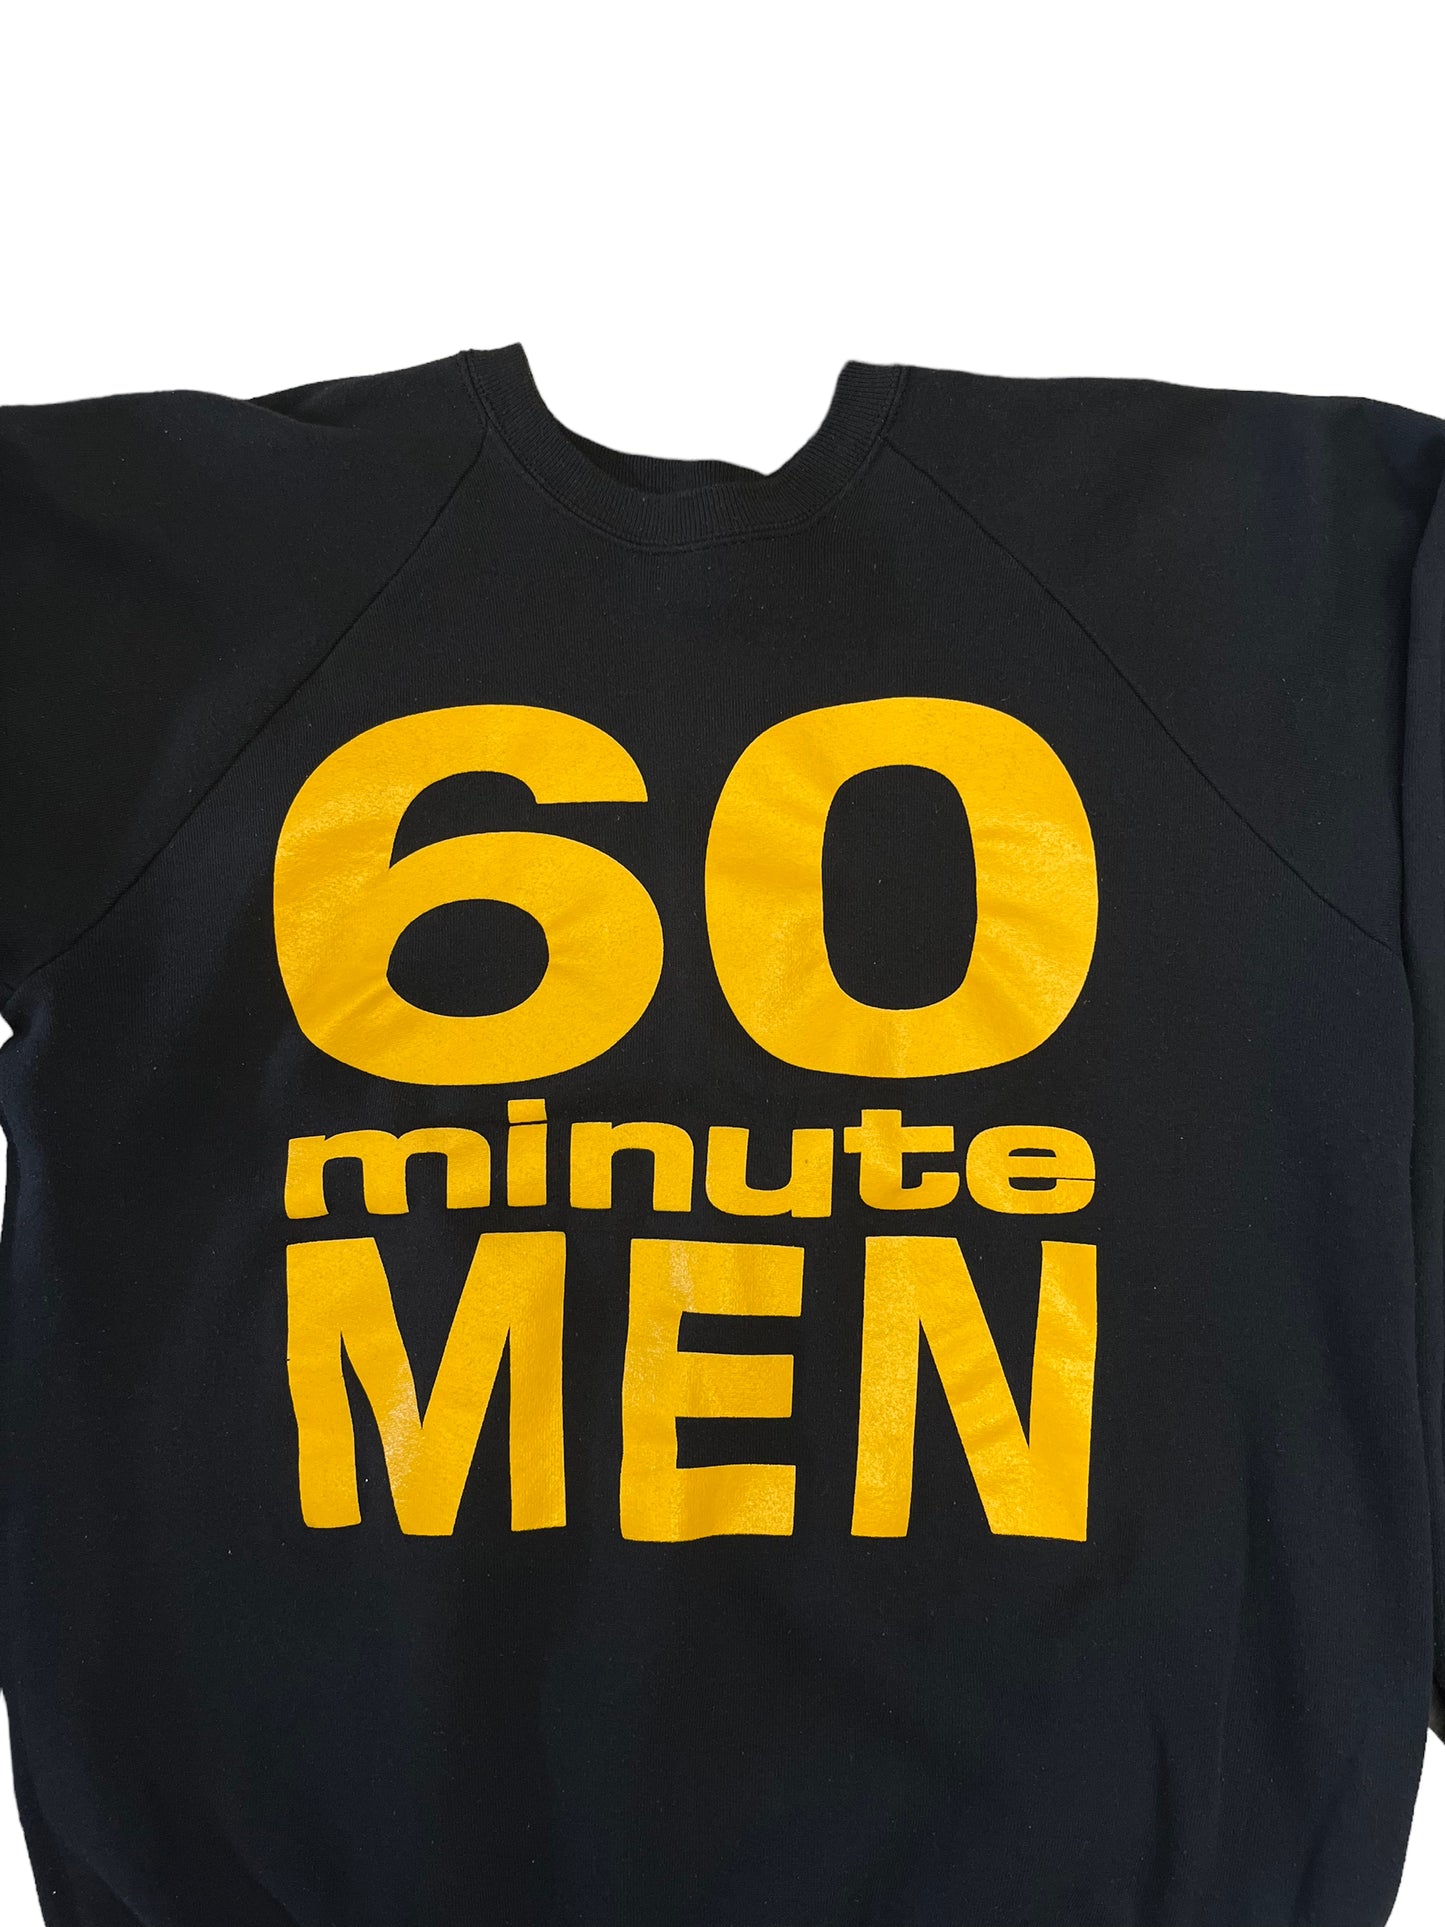 (L) Vintage Pittsburgh Steelers 60 Minute Men Crewneck